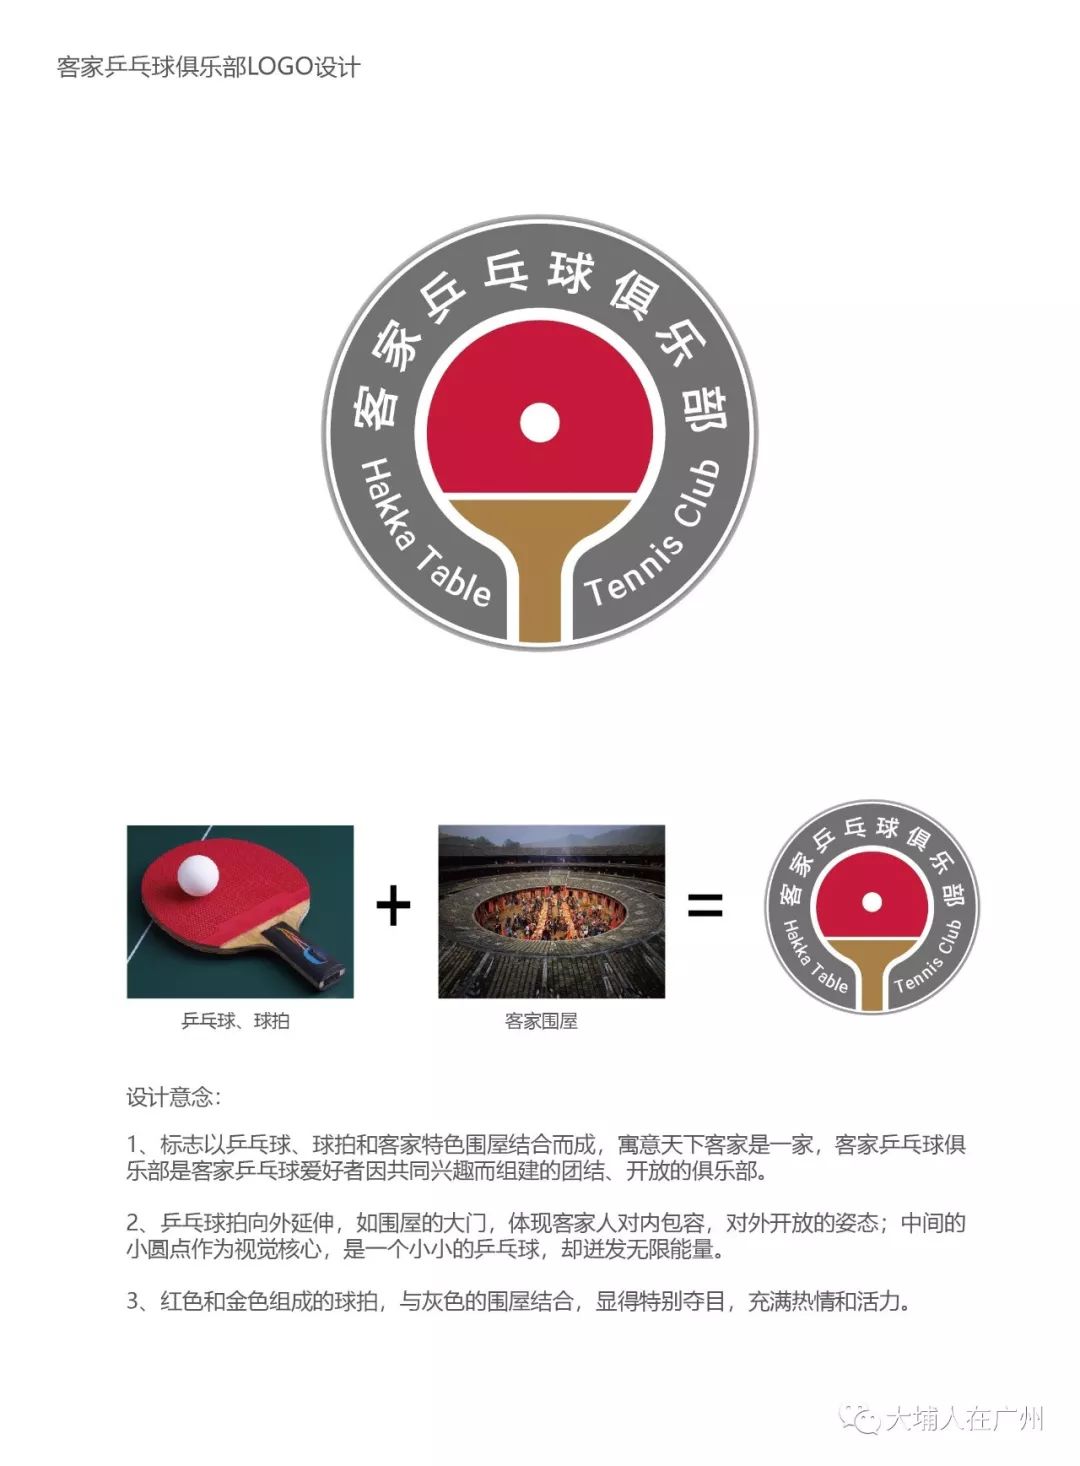 乒乓球logo设计及寓意图片